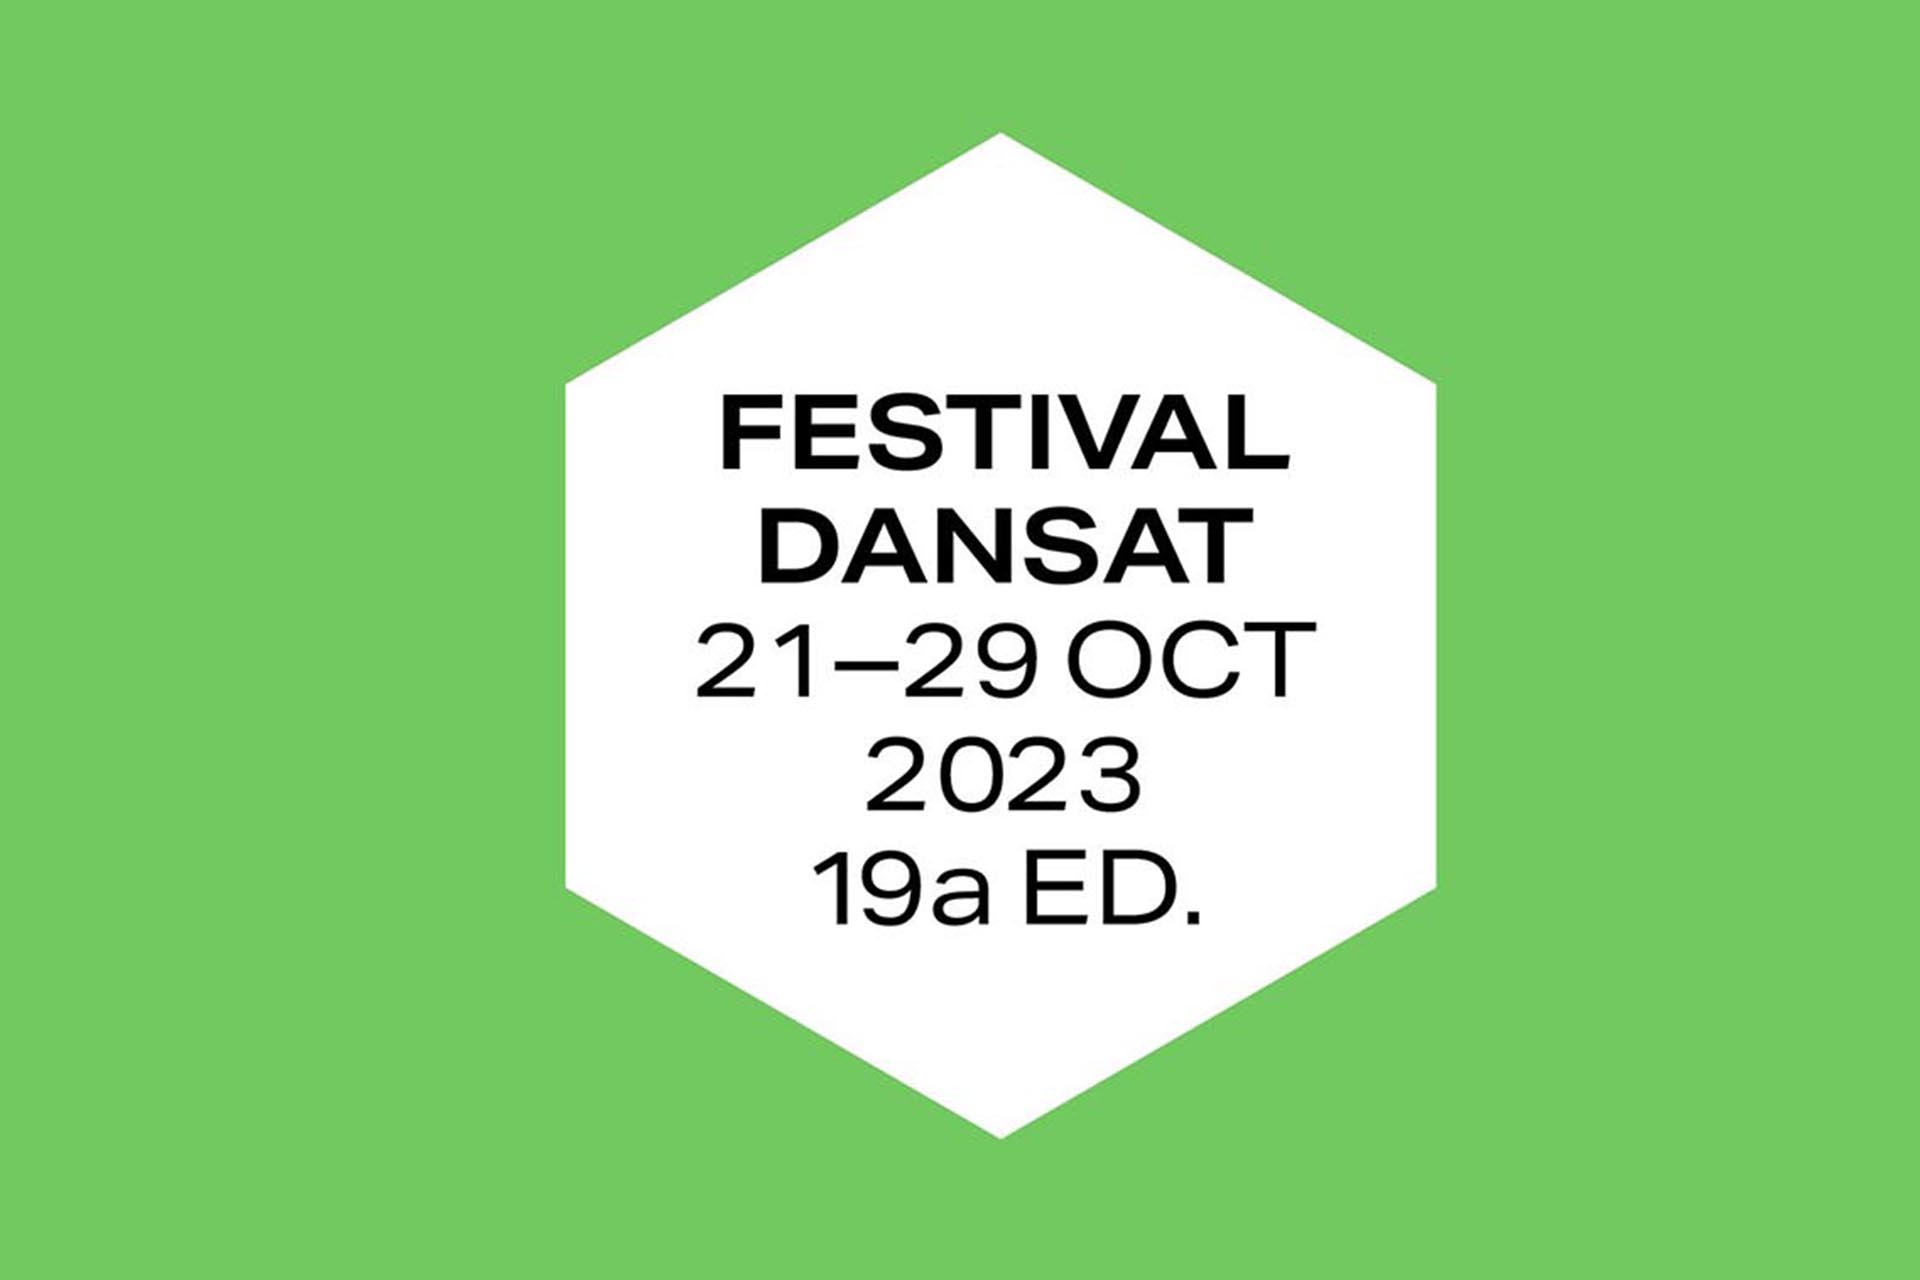 Festival Dansat 2021